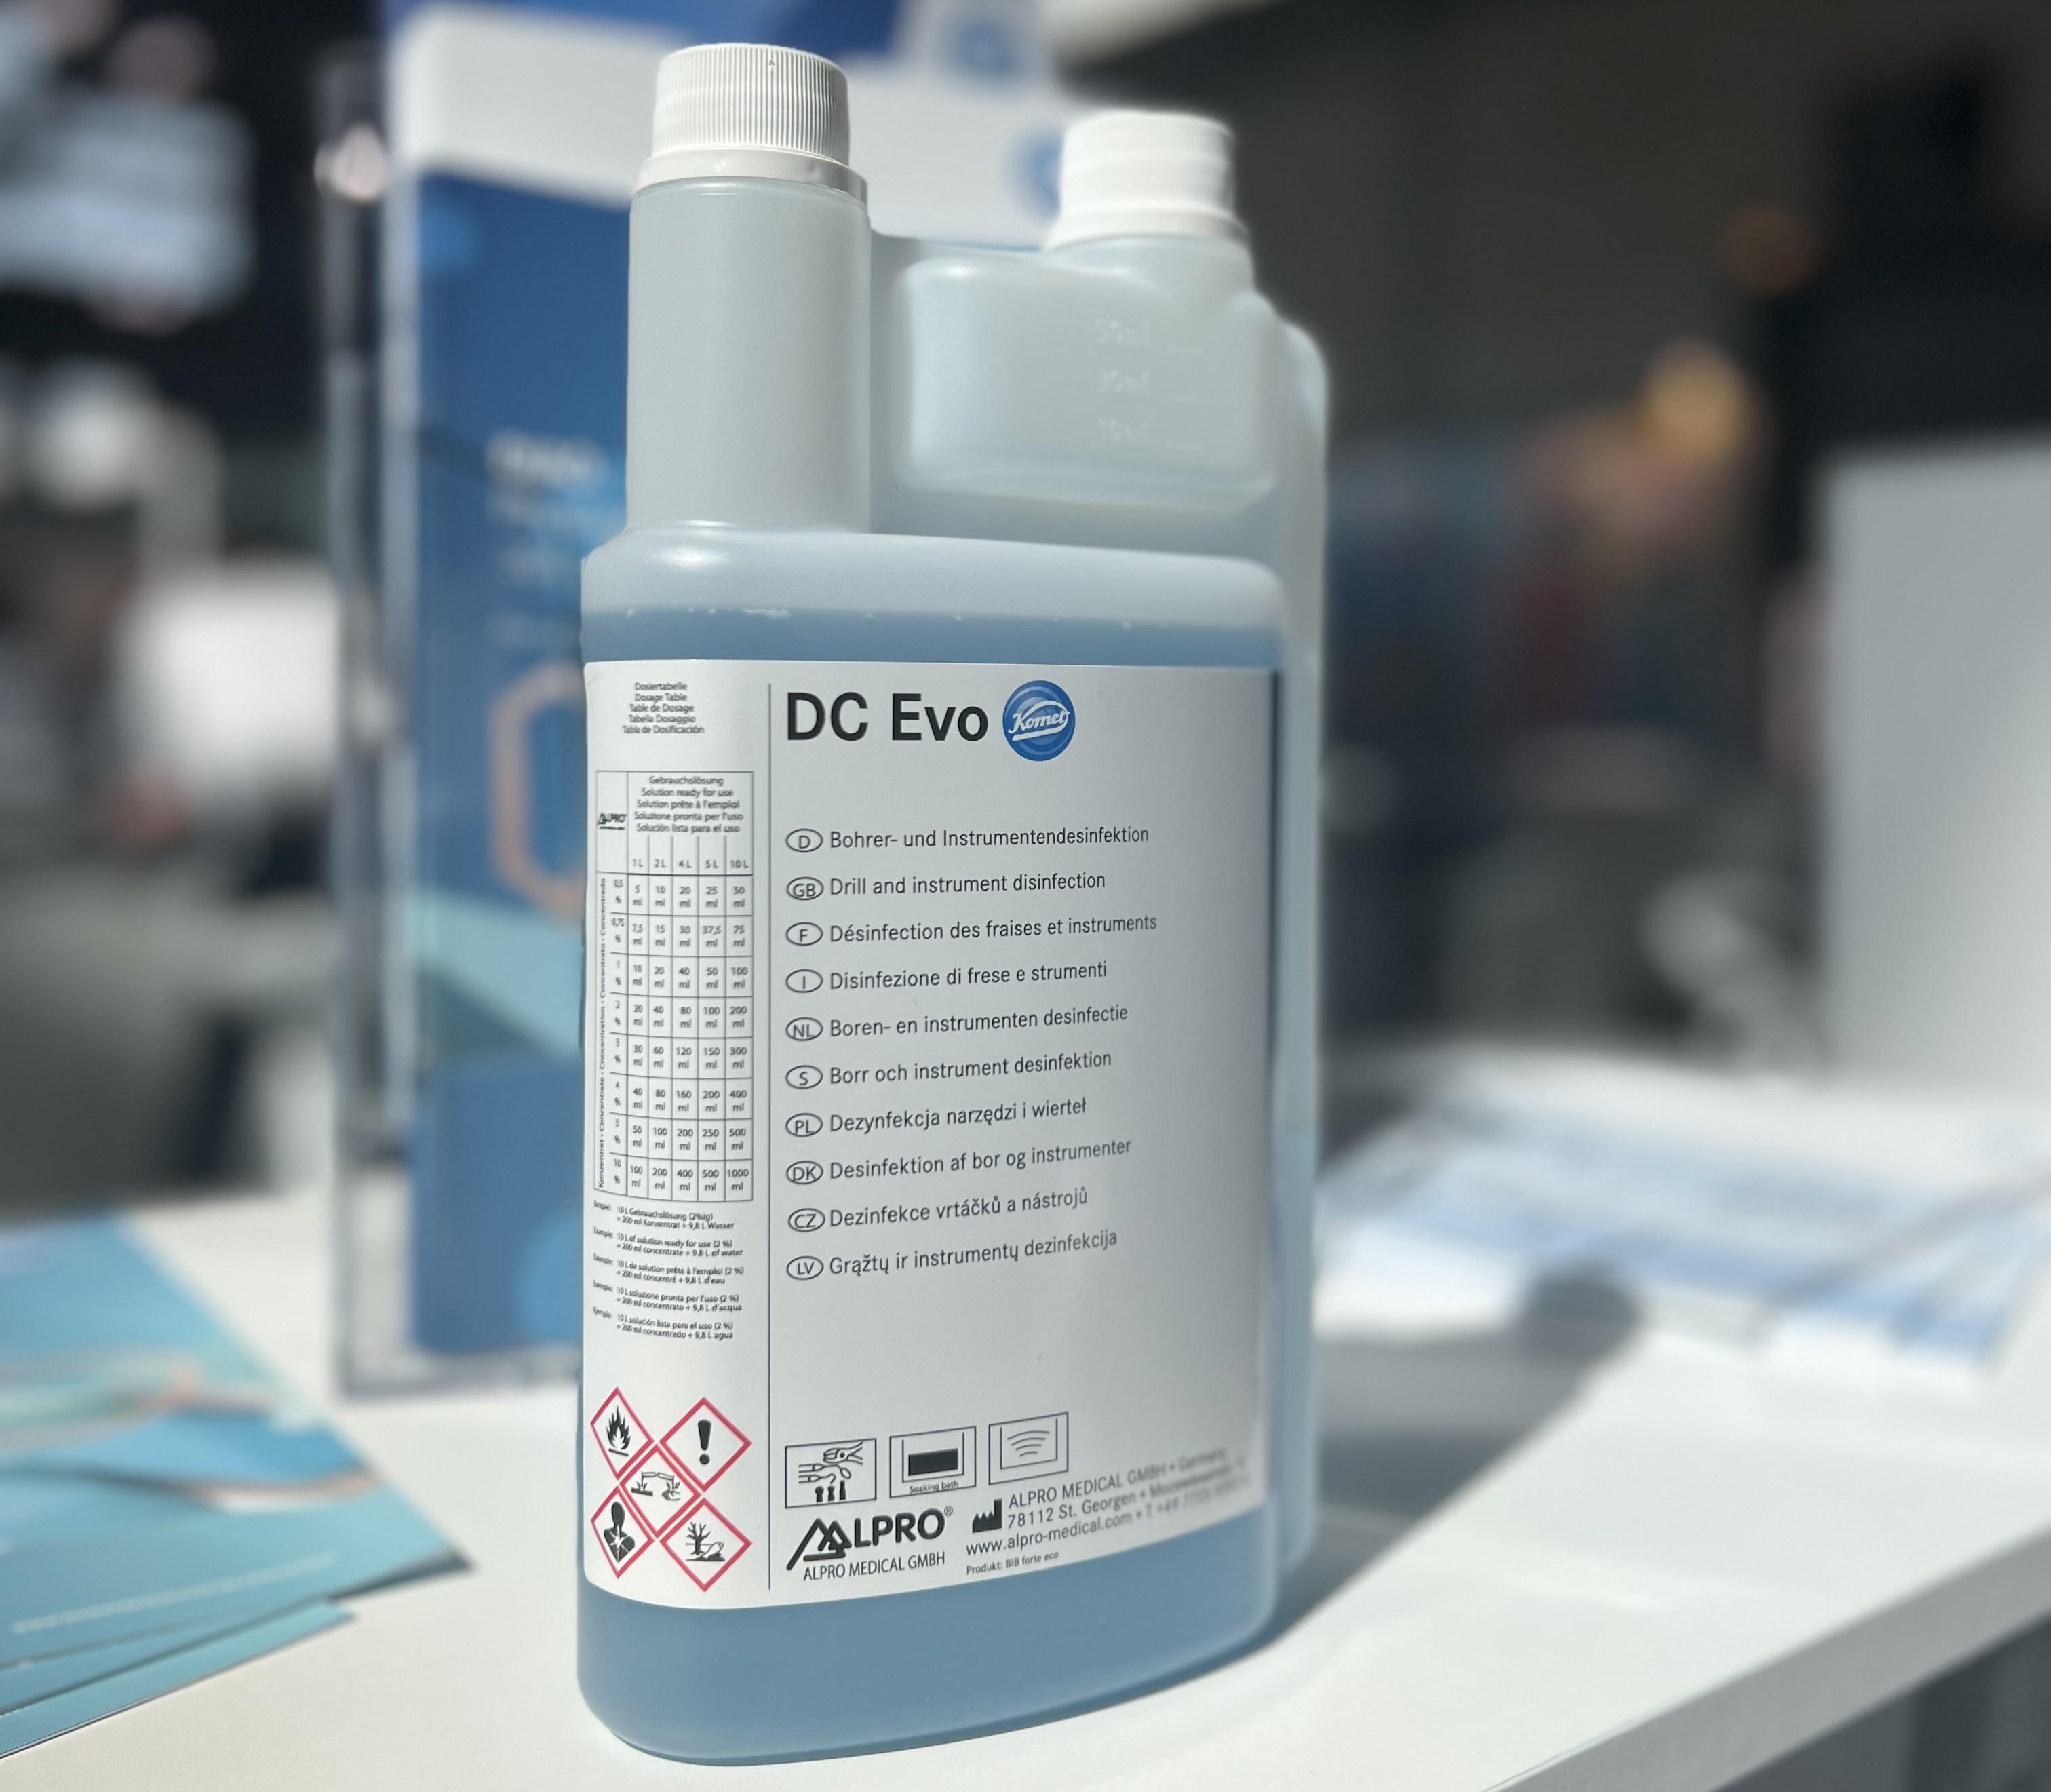 Il nuovo prodotto Komet, il detergente e disinfettante DC Evo